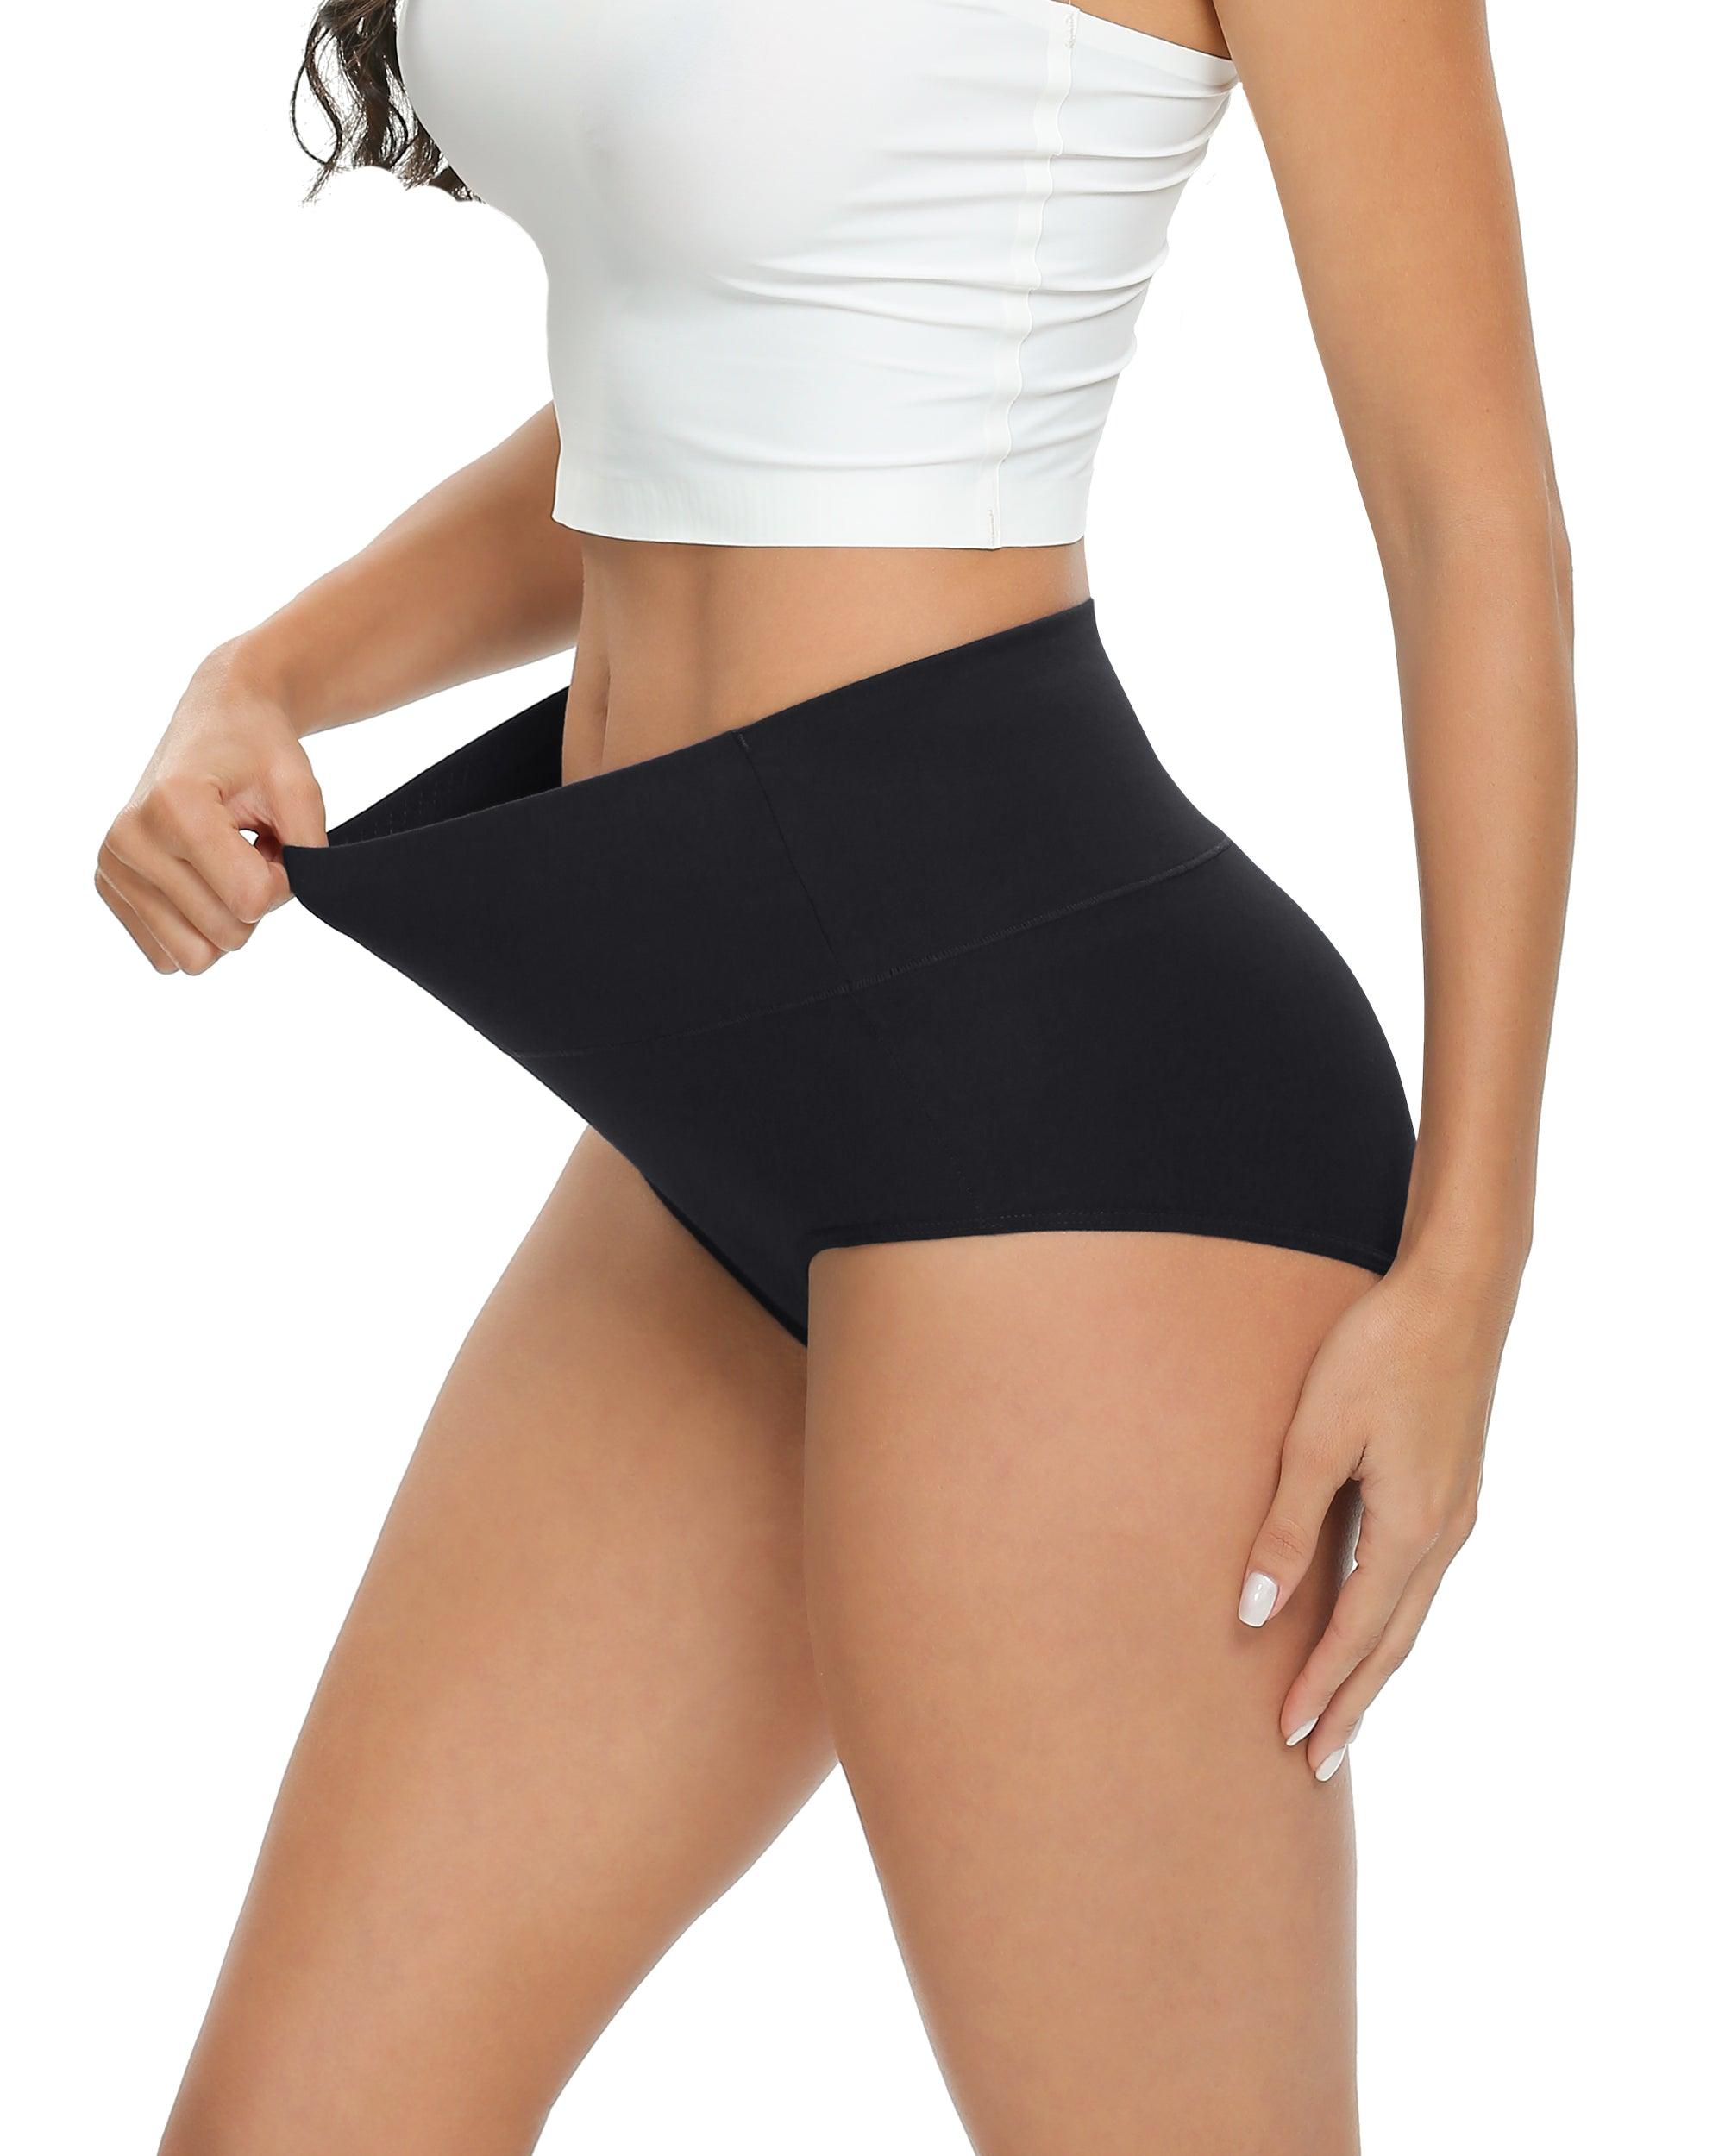 Altheanray Womens Underwear Cotton Briefs - High Waist Tummy